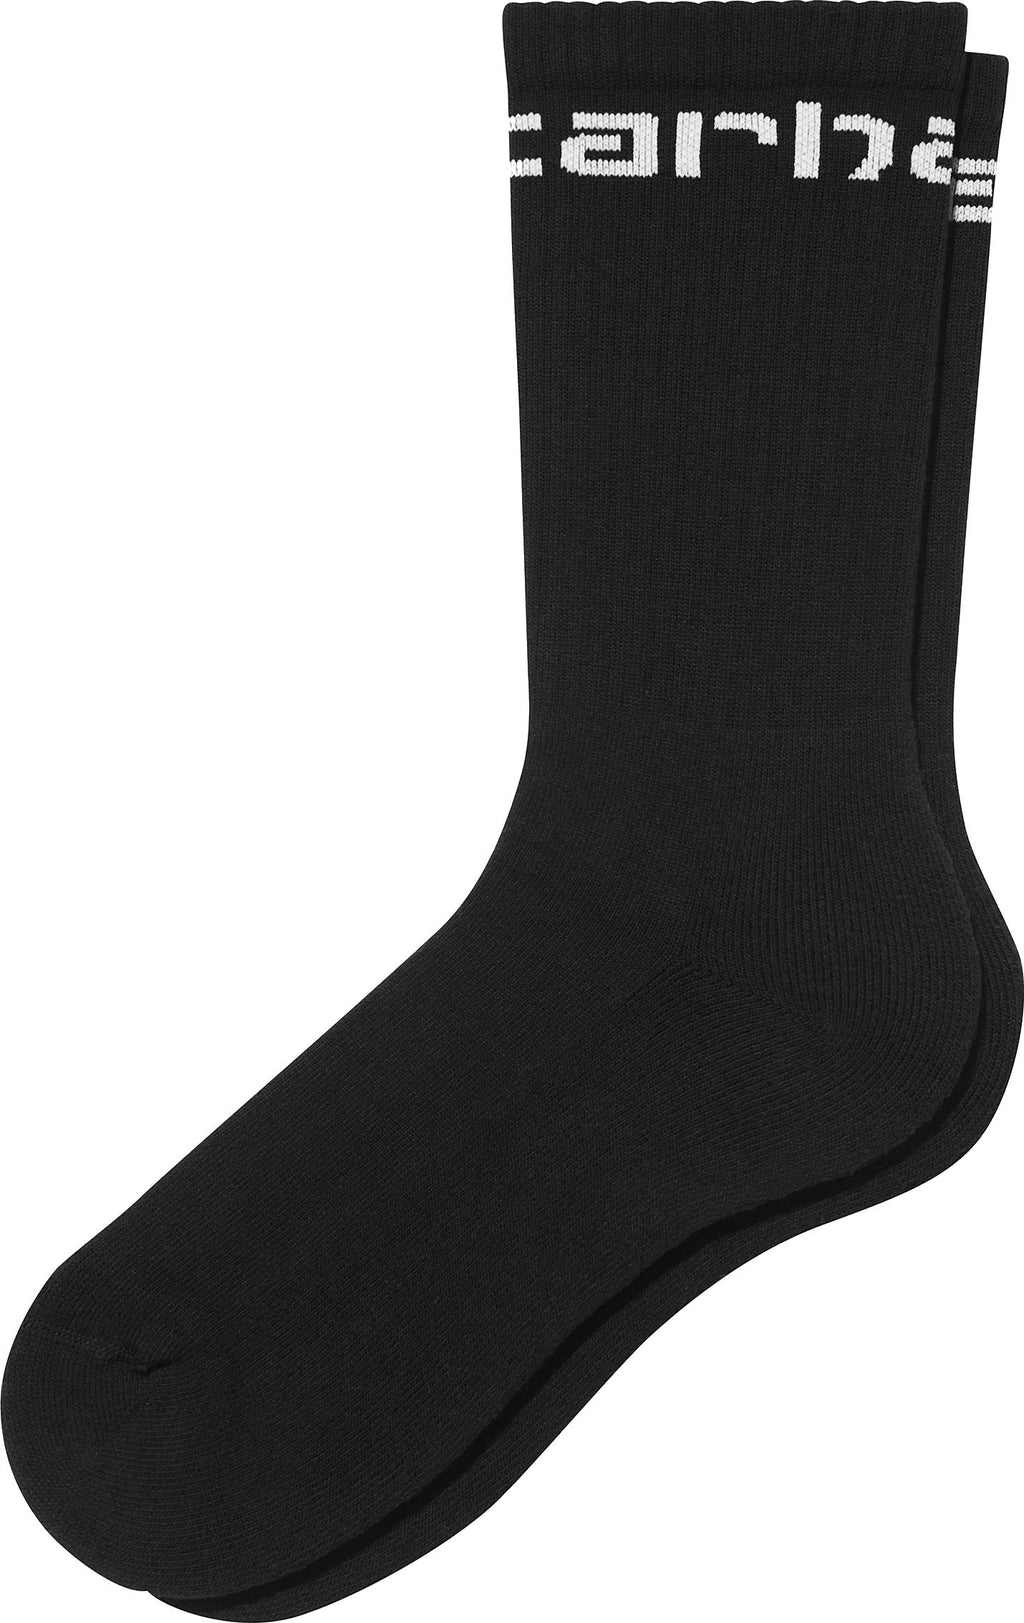  Carhartt Wip Calze Carhartt Socks Black White Nero Uomo - 1